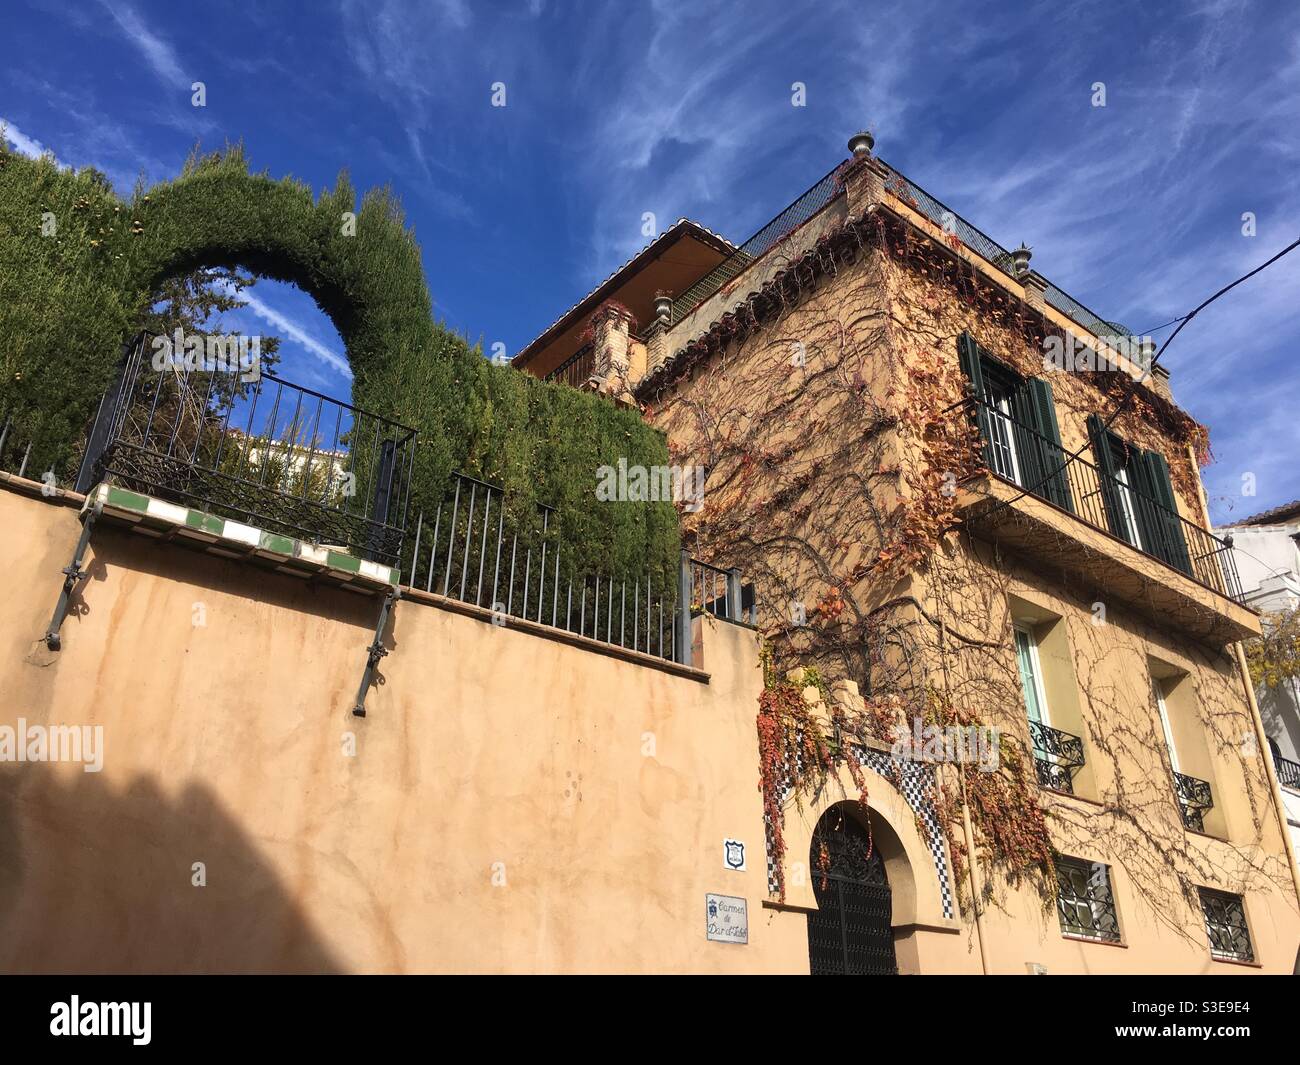 Traditional Spanish architecture in Granada, Spain Stock Photo